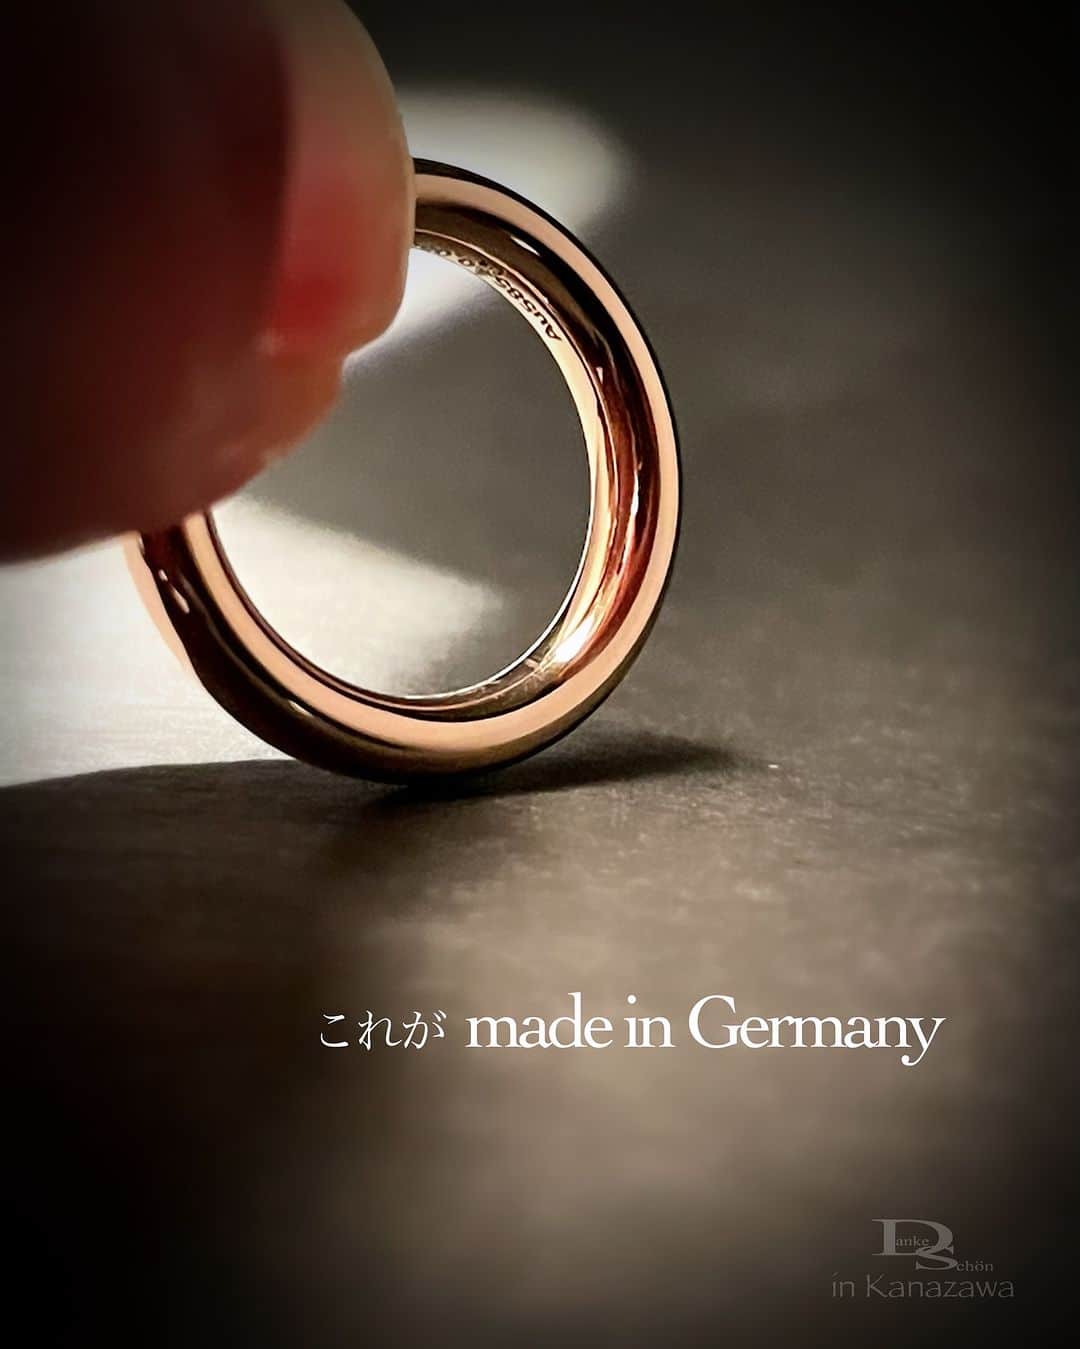 Danke schön ダンケ 金沢 結婚指輪 鍛造さんのインスタグラム写真 - (Danke schön ダンケ 金沢 結婚指輪 鍛造Instagram)「・ ・ ハイ🙌🏻 今日のバウアーさんは コレにします。 ・ ・ 丸っと 艶っと ・ ・ そして🙌🏻 ・ ・ チュルンの指通り ・ ・ これって‼︎ 地金をただ鏡面加工にしたからと言って 艶っとする訳ではなくて ・ ・ 地金の密度が密っとじゃないと こんな風に艶っぽくはならない ・ ・ しかもこの指輪の作りの違いは 何年・何十年後に必ず「差」となり かえってくる ・ ・ 「キレイ」な指輪はたくさんありますが 「美しい」指輪となるのです。 ・ ・ 「艶」では無くて「照り」が 堪らないのです🤭 ・ ・ 「傷」では無く「味わい・風合い」が 堪らないのです💘 ・ ・ 携われば携わるほど感じるのですが クリスチャンバウアーの指輪って ・ ・ 買って直ぐ 使って直ぐ ・ ・ お値段の違いが分からないから もどかしい反面 伝え甲斐のある指輪だと ・ ・ 寧ろ何年後 何十年後ふとした時に ・ ・ 「あれっ」と思いマジマジ指輪を見て なるほどこう言う事だったのか…と気付く ・ ・ その時に初めて 選び抜いて良かった「事」を実感 ・ ・ そこから先は指輪が 愛しくて愛おしいくて堪らなくなる ・ ・ 裏を返せば選び抜いたからには そこまで「使い込んで」欲しいのです。 ・ ・ きっと全ての感情の順番が逆で 訪れて来るのがバウアーさん ・ ・ コレを購入前に見抜けるか 見抜けないかの差はなんだろうね？ ・ ・ コレを伝え切る面白さが私の役目😆 私の腕💪の見せ所じゃなくて このオクチにかかってる🤭 ・ ・ 同じバウアーさんであっても どう捉えた人から話を聞くかで ・ ・ その後のお客様にも大きい差になるのだと 私は思っています。 ・ ・ それらもひっくるめて全てが逆になって 自分にかえってくる指輪。 ・ ・ これがDanakeが捉えた 「クリスチャンバウアー」です。 ・ ・ ・ ・ ・ 【工業系 鍛造削り出し】 🇩🇪クリスチャンバウアー 専門店 ・ ・ ワンランク上をいくノウハウの クリスチャンバウアーの選び方なら 『Danke schön 』 ・ ・ ・ —— 𝐃𝐚𝐧𝐤𝐞——— ▪︎ Instagramプロフィール 🔜 @danke2005  —————————————————————𝐒𝐜𝐡⍥𝐧——— ・ ・ #クリスチャンバウアー金沢 #鍛造指輪 #鍛造リング #結婚指輪 #結婚指輪オーダー #切削加工 #結婚指輪探し #結婚指輪選び #指輪探し #指輪選び #マリッジリング #結婚指輪金沢 #金沢結婚指輪 #セカンドリング #結婚指輪買い替え #地金屋鍛造 #ブライダルリング #結婚記念日 #ベビーリング #ドイツリング #クリスチャンバウアーダンケ #クリスチャンバウアーdanke #ダイヤモンドリング #セットアップコーデ #ミル打ち #フルエタ   ——————————————✈︎ ———  鍛造削り出し 🇩🇪クリスチャンバウアー 専門店 『𝐃𝐚𝐧𝐤𝐞 𝐬𝐜𝐡⍥𝐧』 ・ • 営業時間 am11:00〜pm9:00 • 定休日 : 木曜日 • 駐車場 : 店舗前OK • ご予約 : 優先 ・ ・ ——𝐃𝐚𝐧𝐤𝐞——————————————— ▪︎トップページ 🔜 @danke2005 ———————————————————-𝐒𝐜𝐡⍥𝐧」1月25日 12時37分 - danke2005